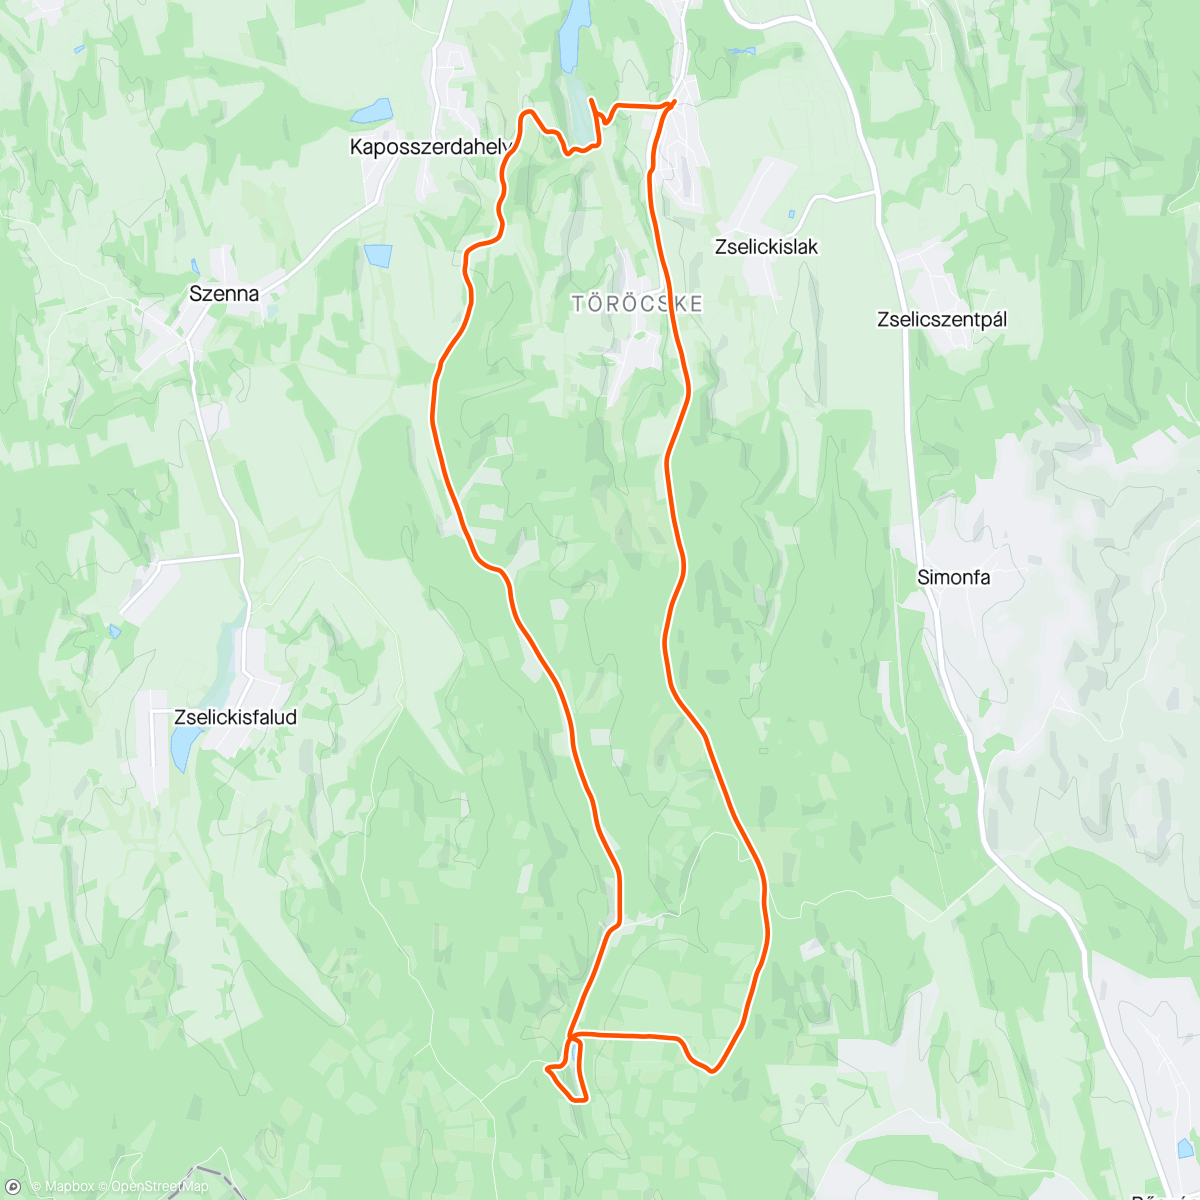 Map of the activity, Maraton utánni túra Szabival 👌🚵🚵
"Utánni 1 N "😂